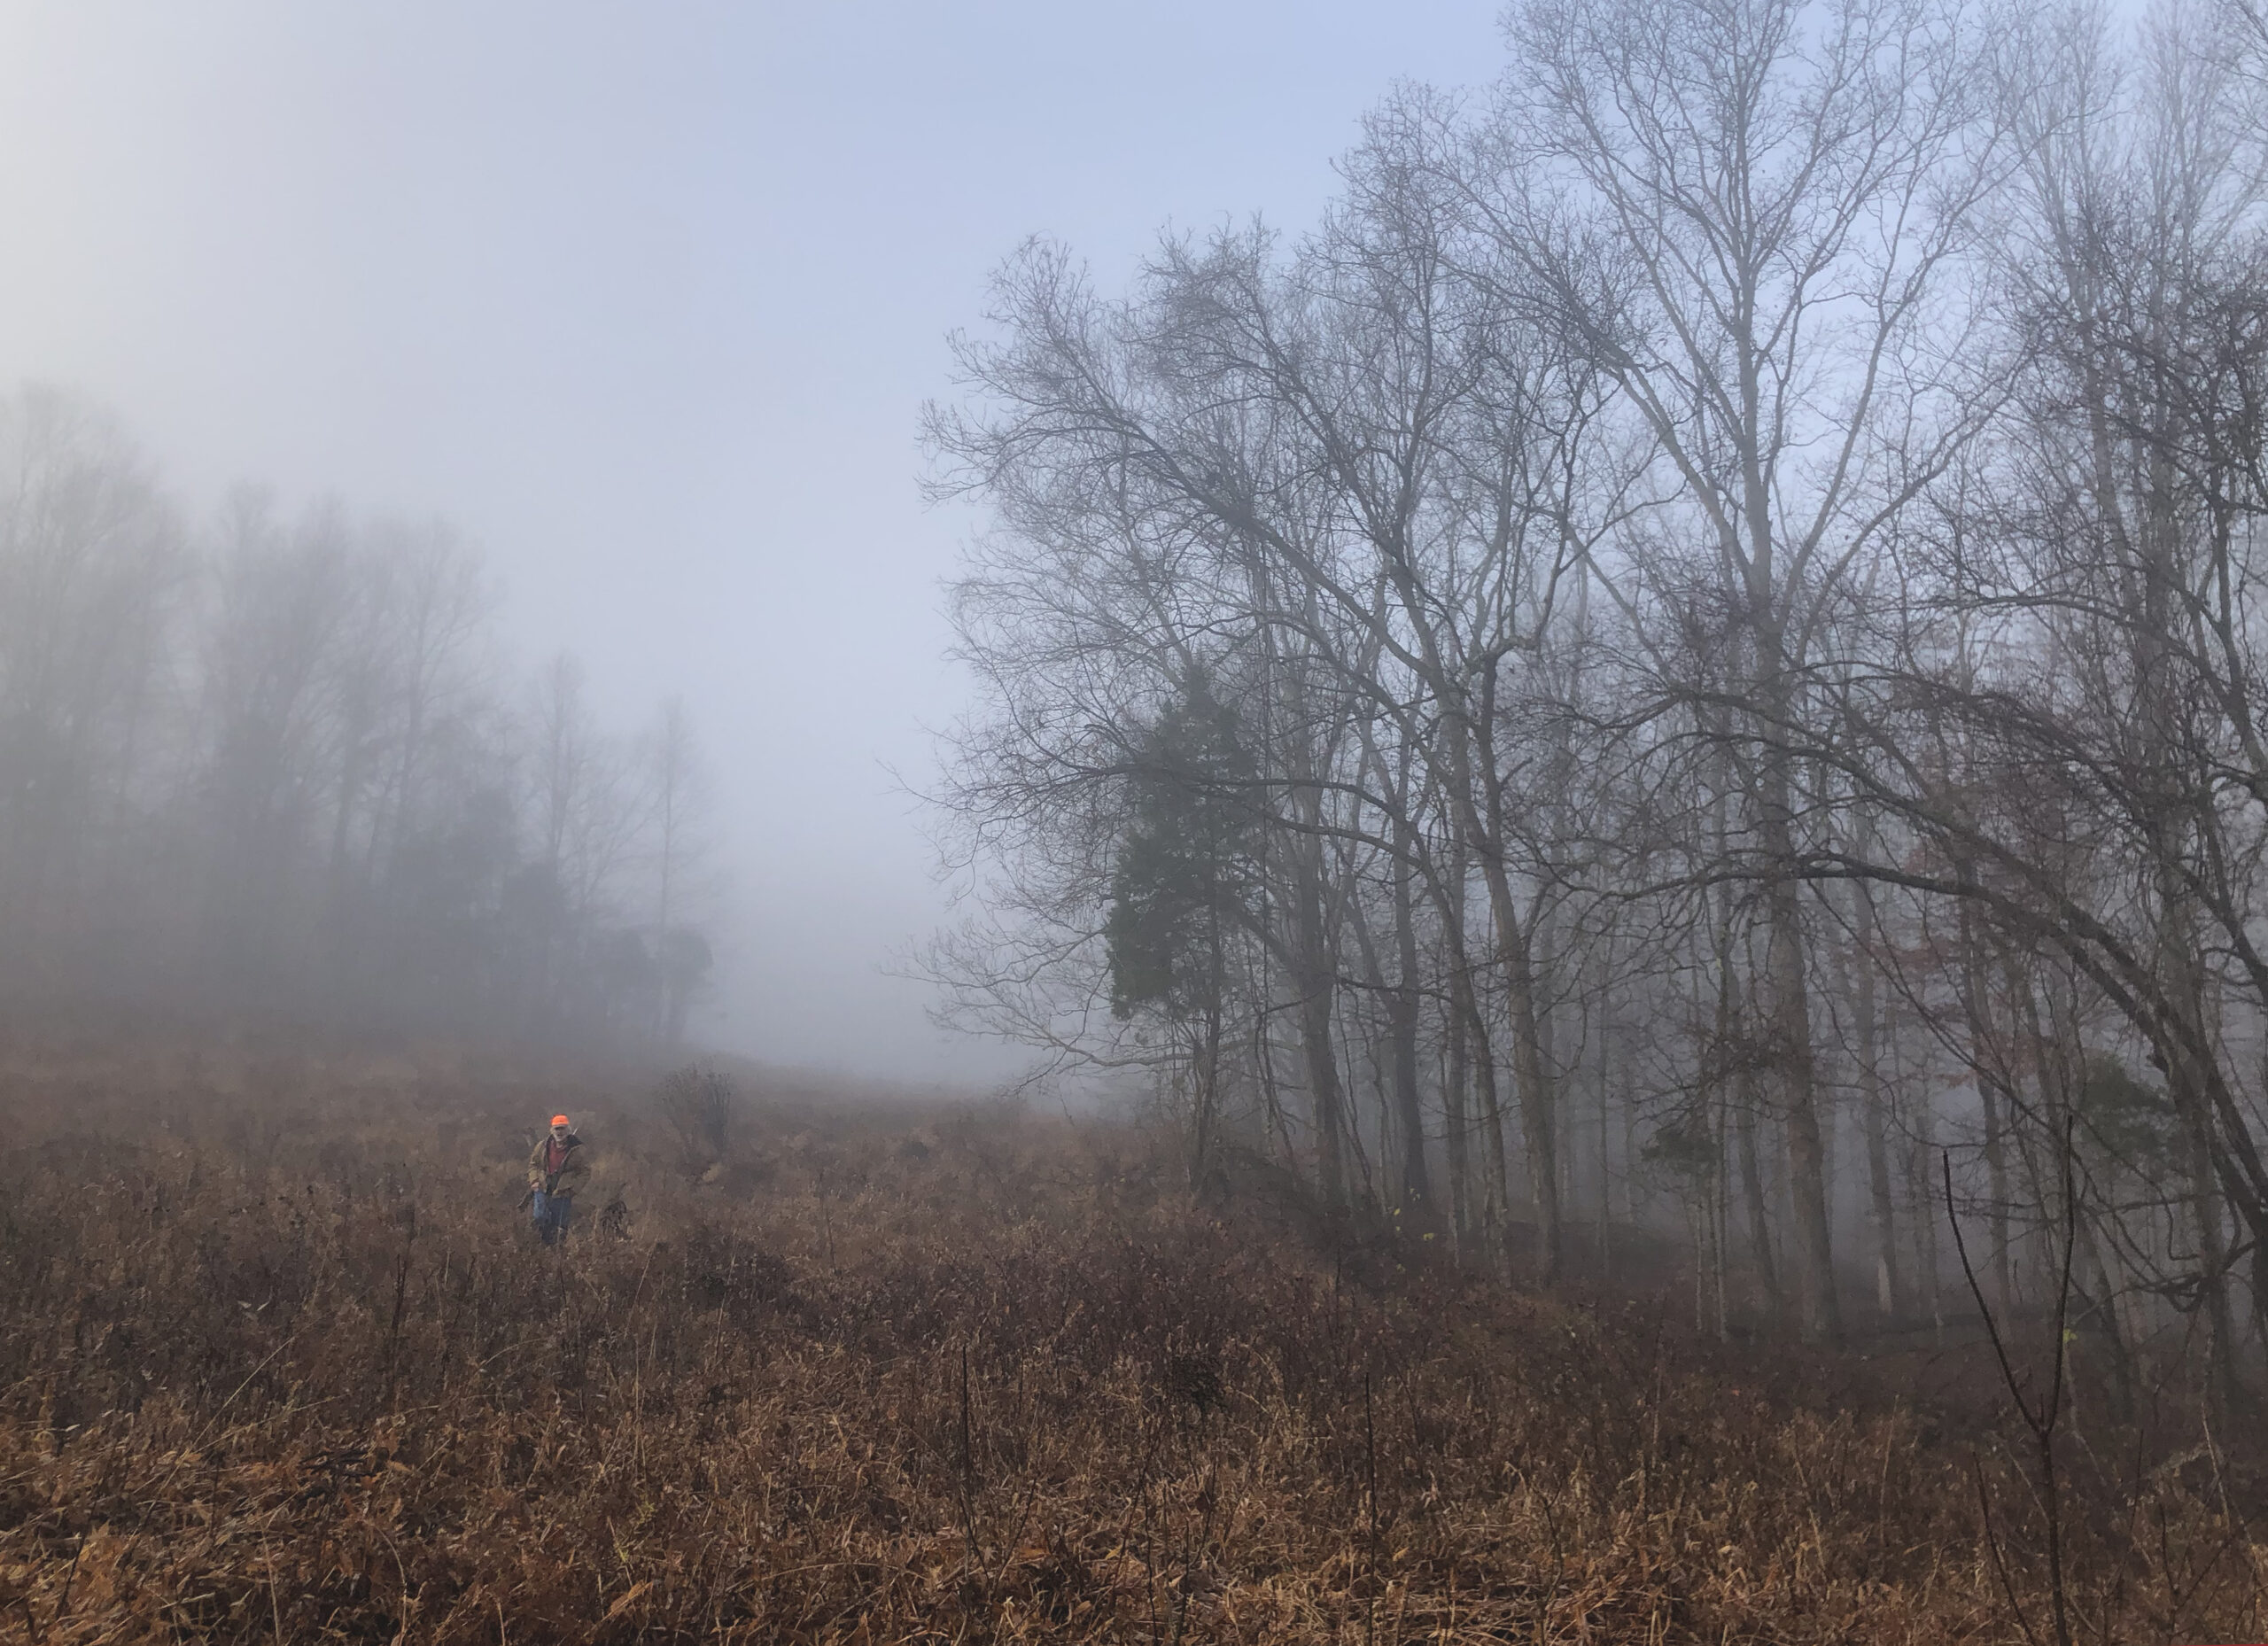 A man in a blaze orange hat walks through a misty fall field.